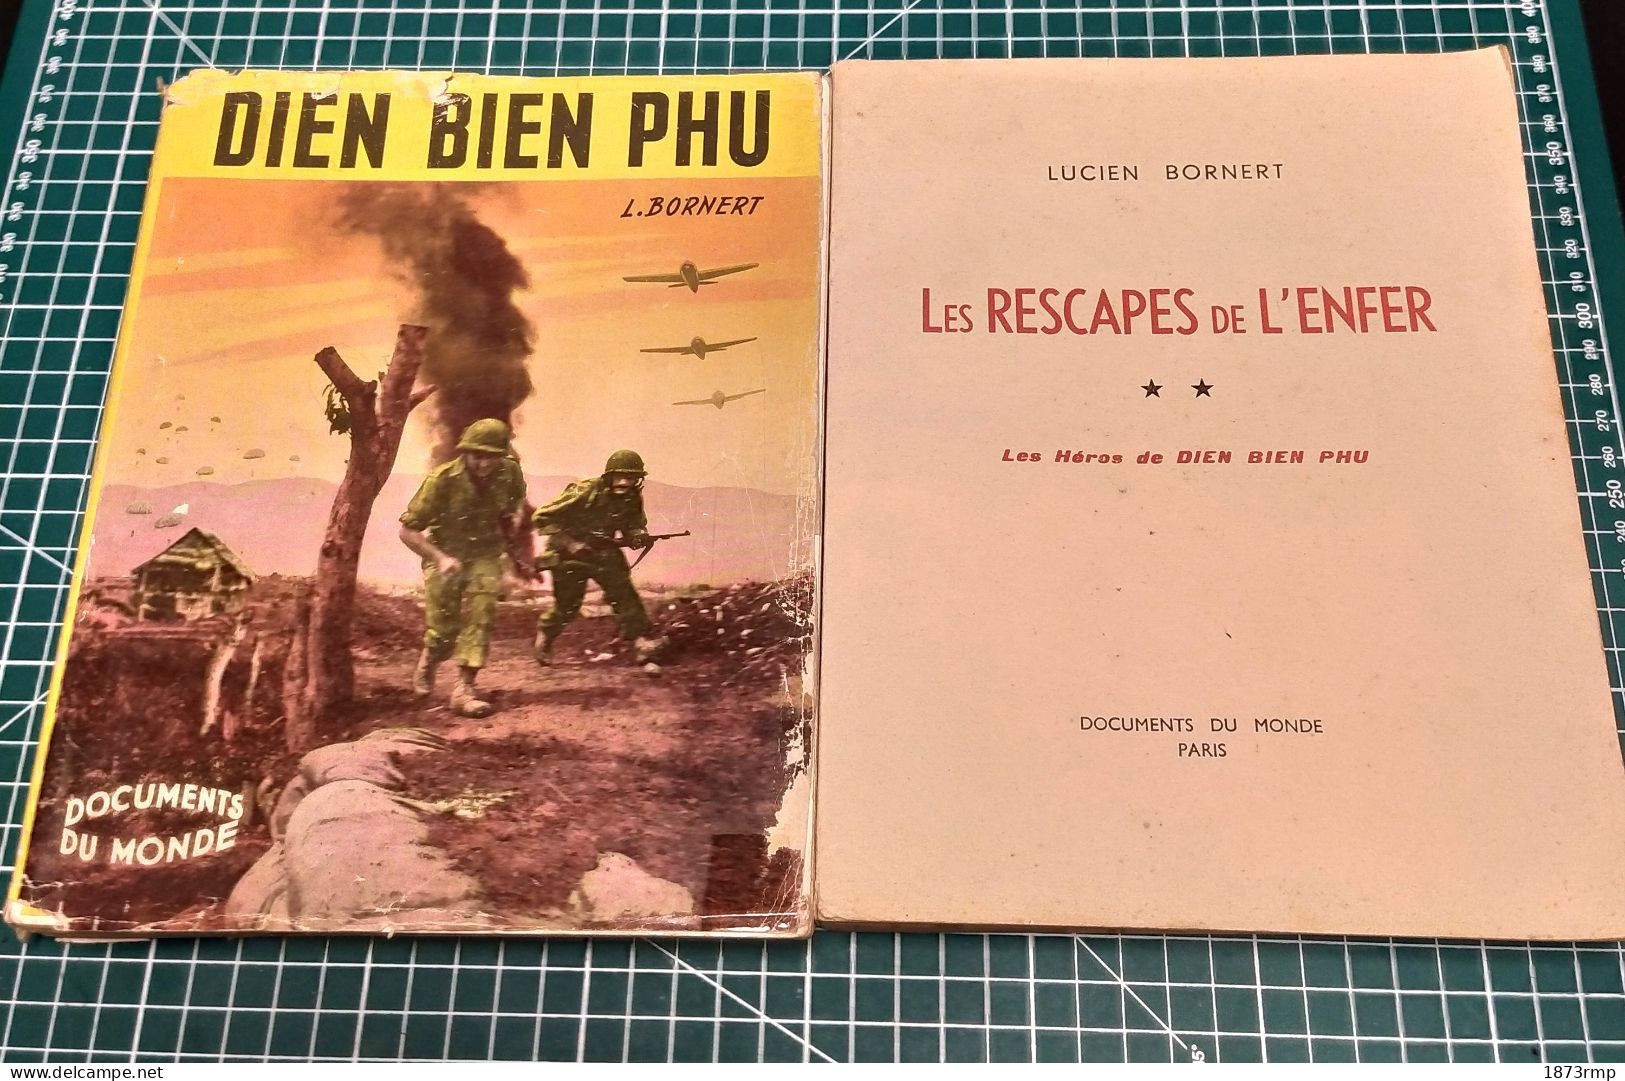 DIÊN BIÊN PHU ET LES RESCAPES DE L'ENFER, LUCIEN BORNERT, EDITION ORIGINALE 1954, GUERRE D'INDOCHINE - Francés